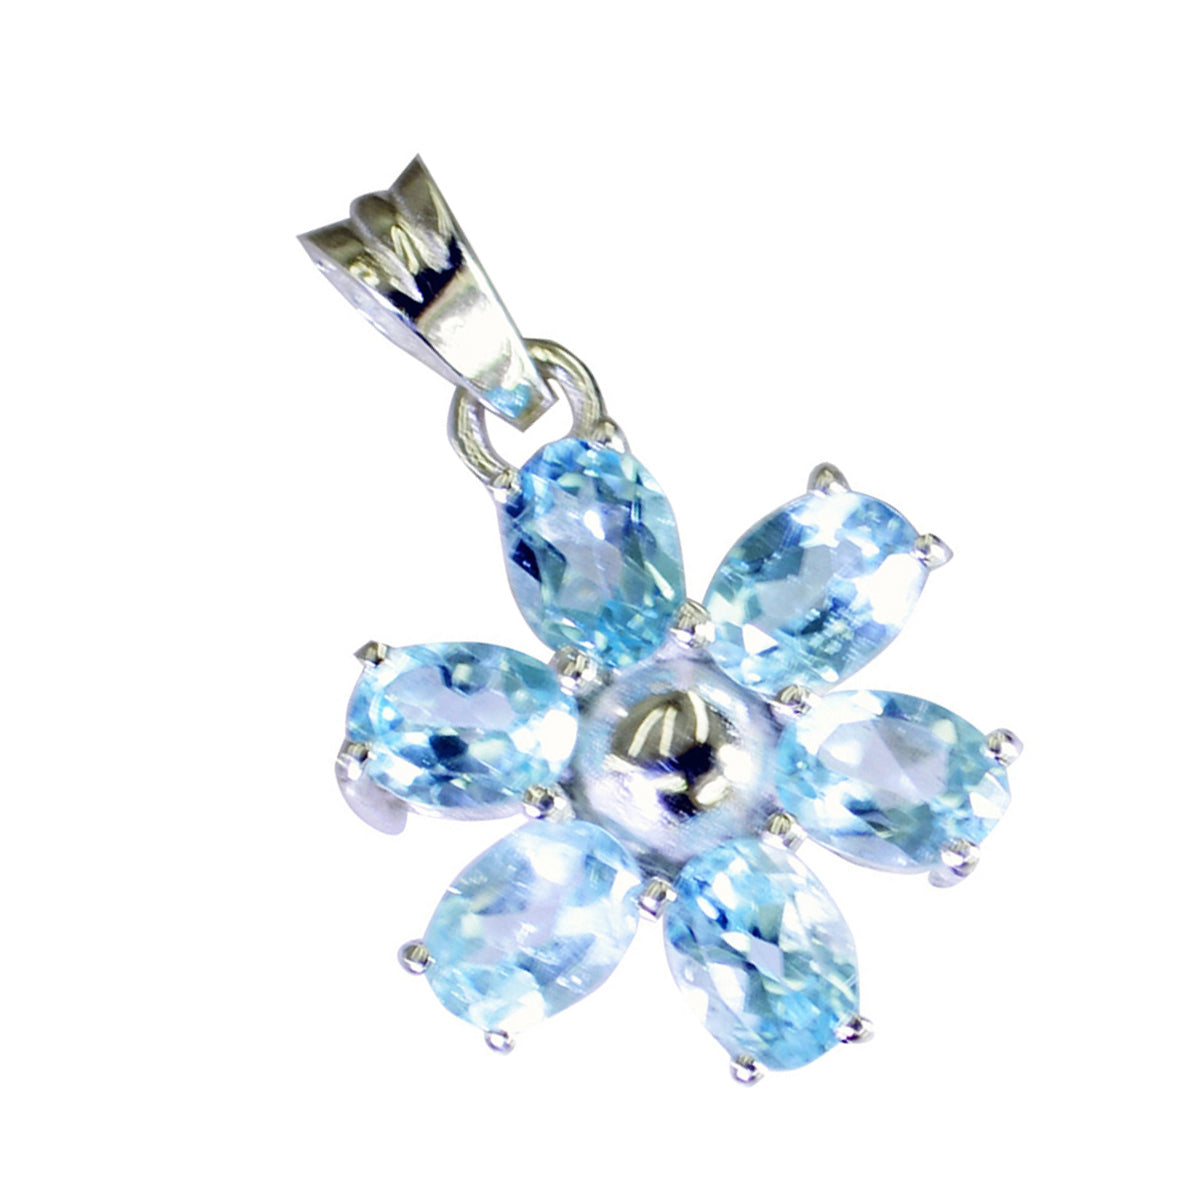 Riyo jolies pierres précieuses ovale à facettes bleu topaze bleue pendentif en argent massif cadeau pour mariage